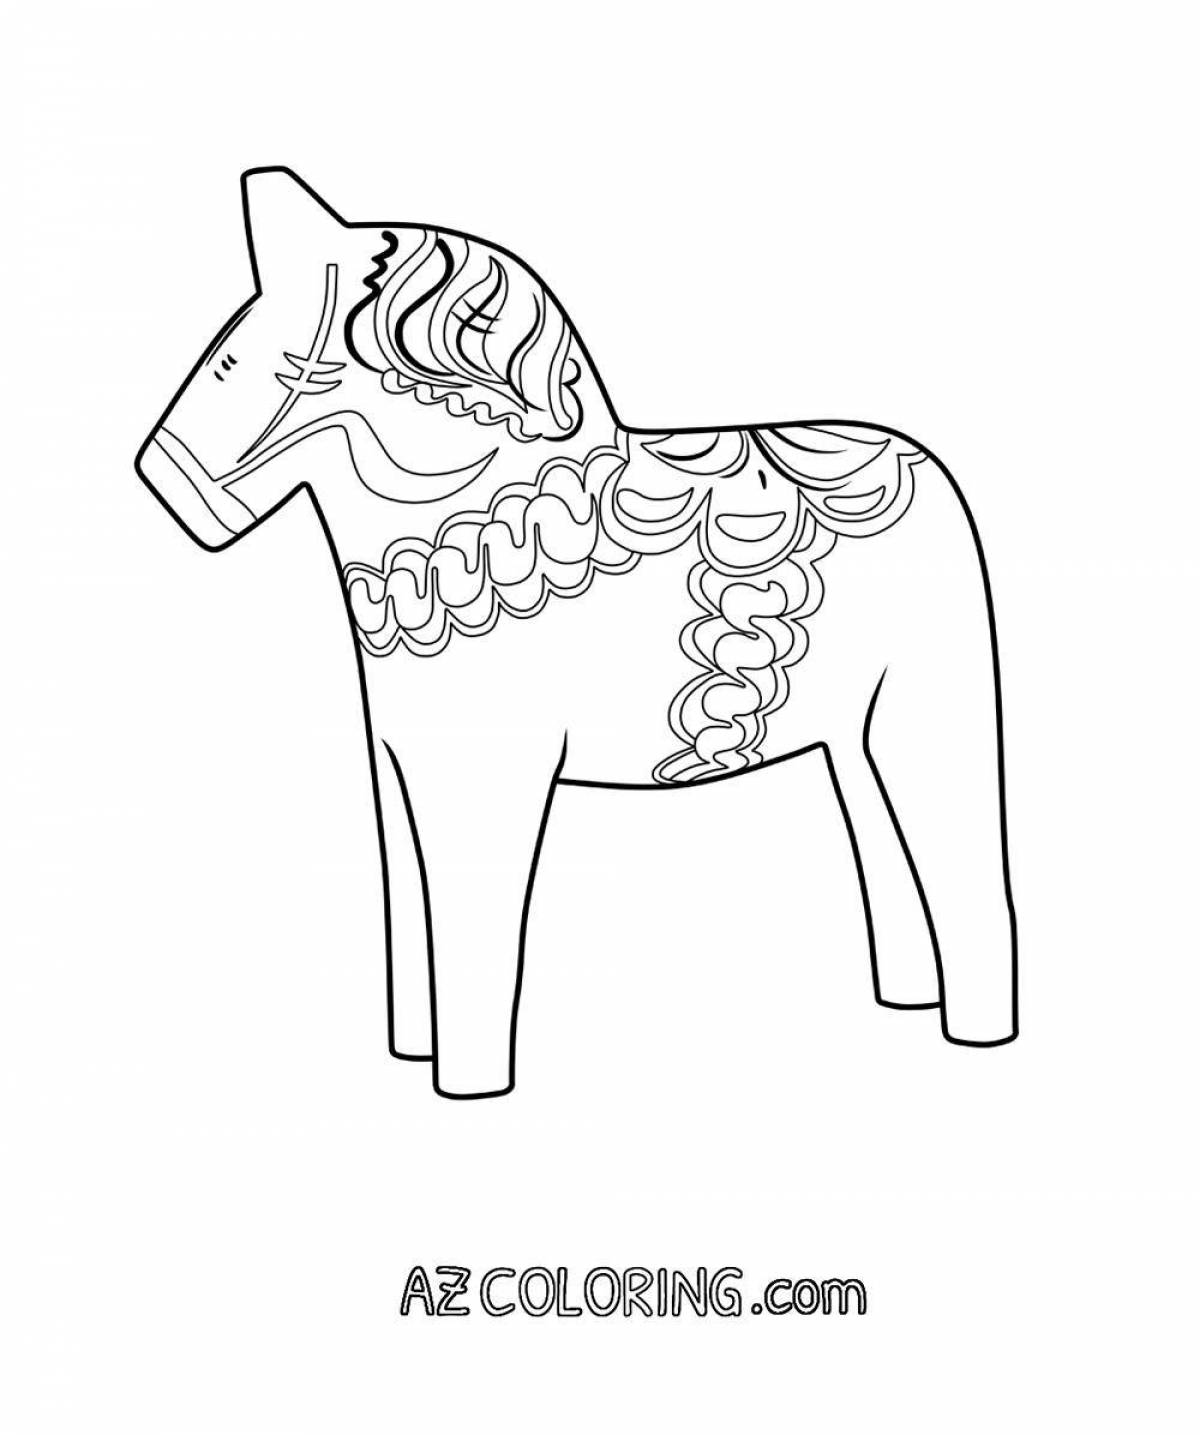 Увлекательная раскраска городецкая лошадь